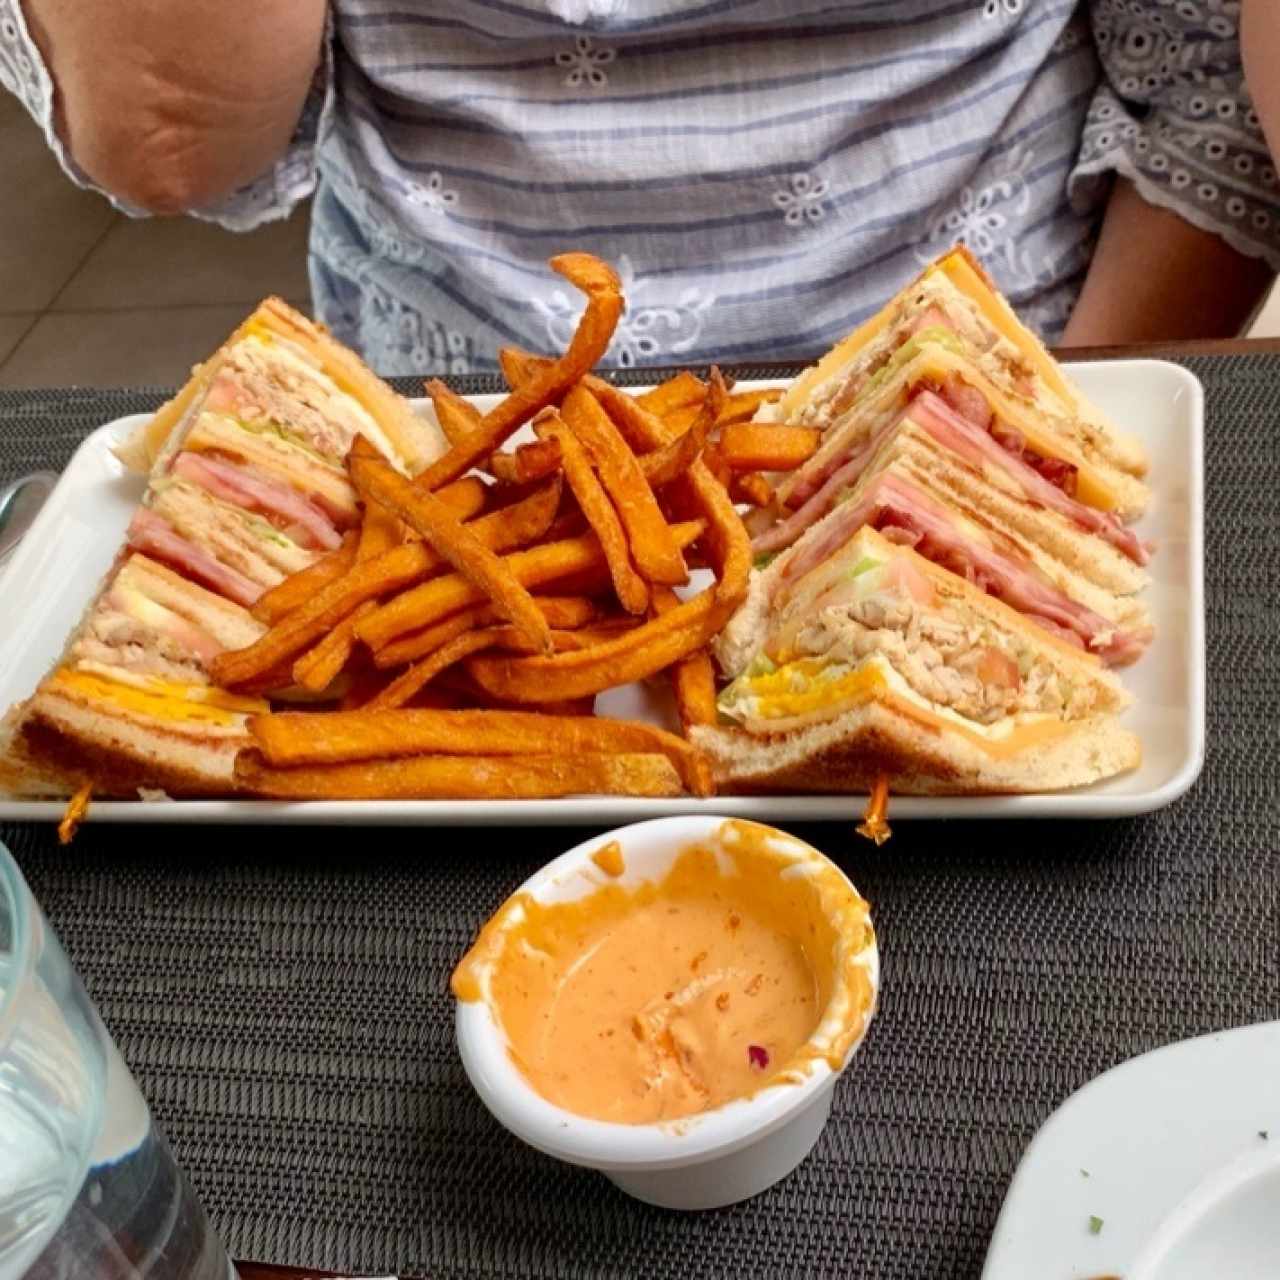 Emparedados - Club sandwich